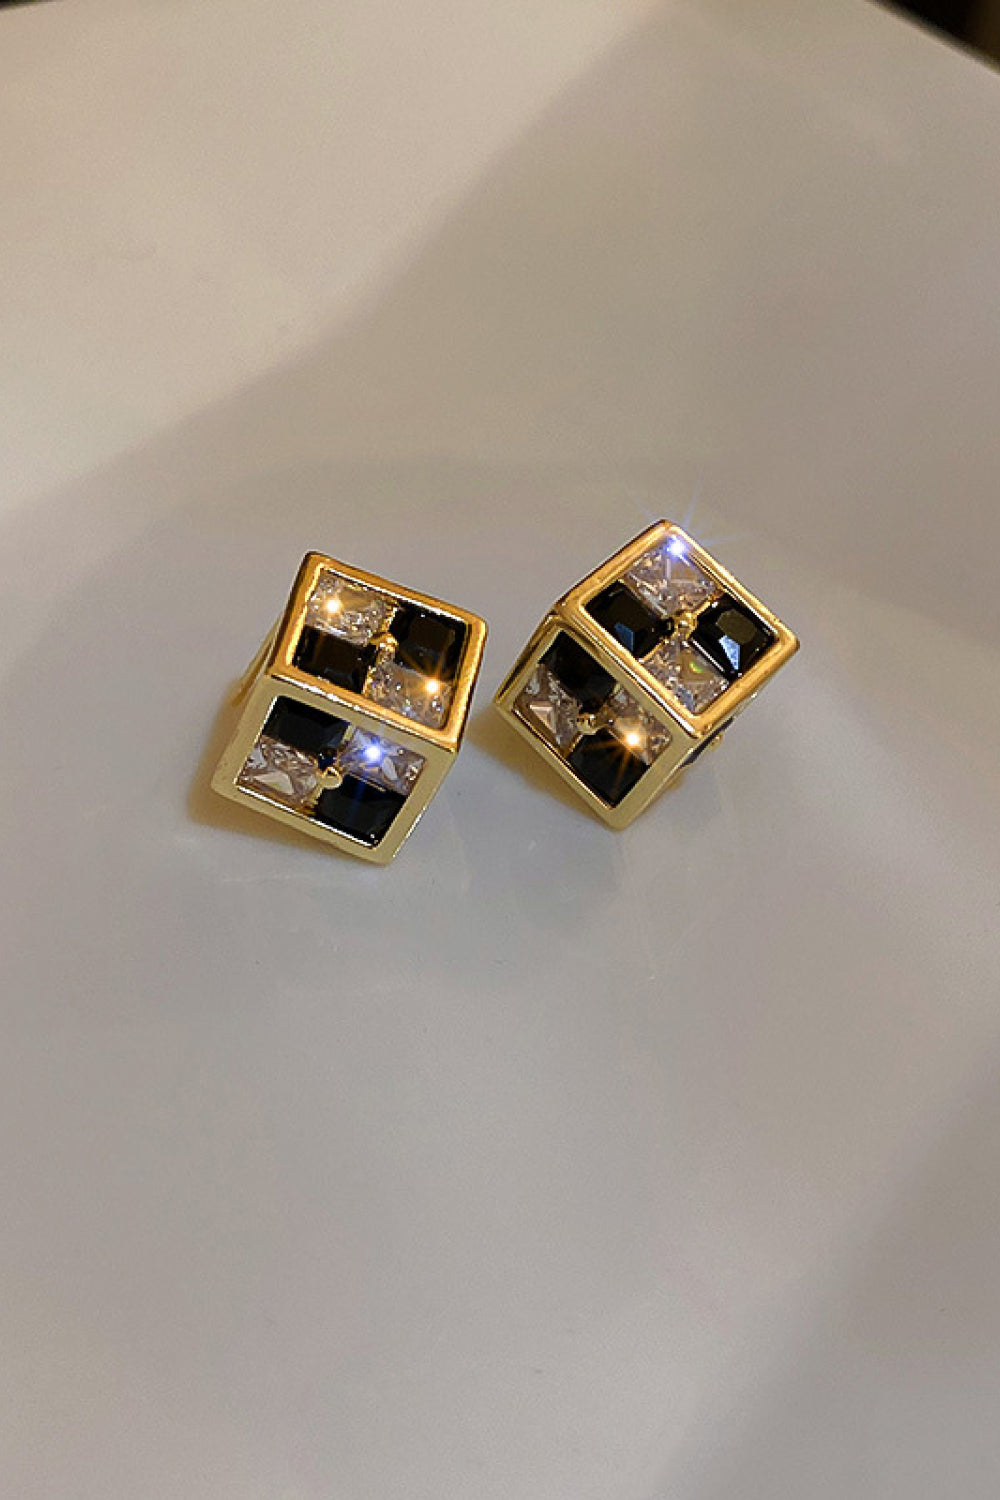 Checkered Rhinestone Cube Stud Earrings